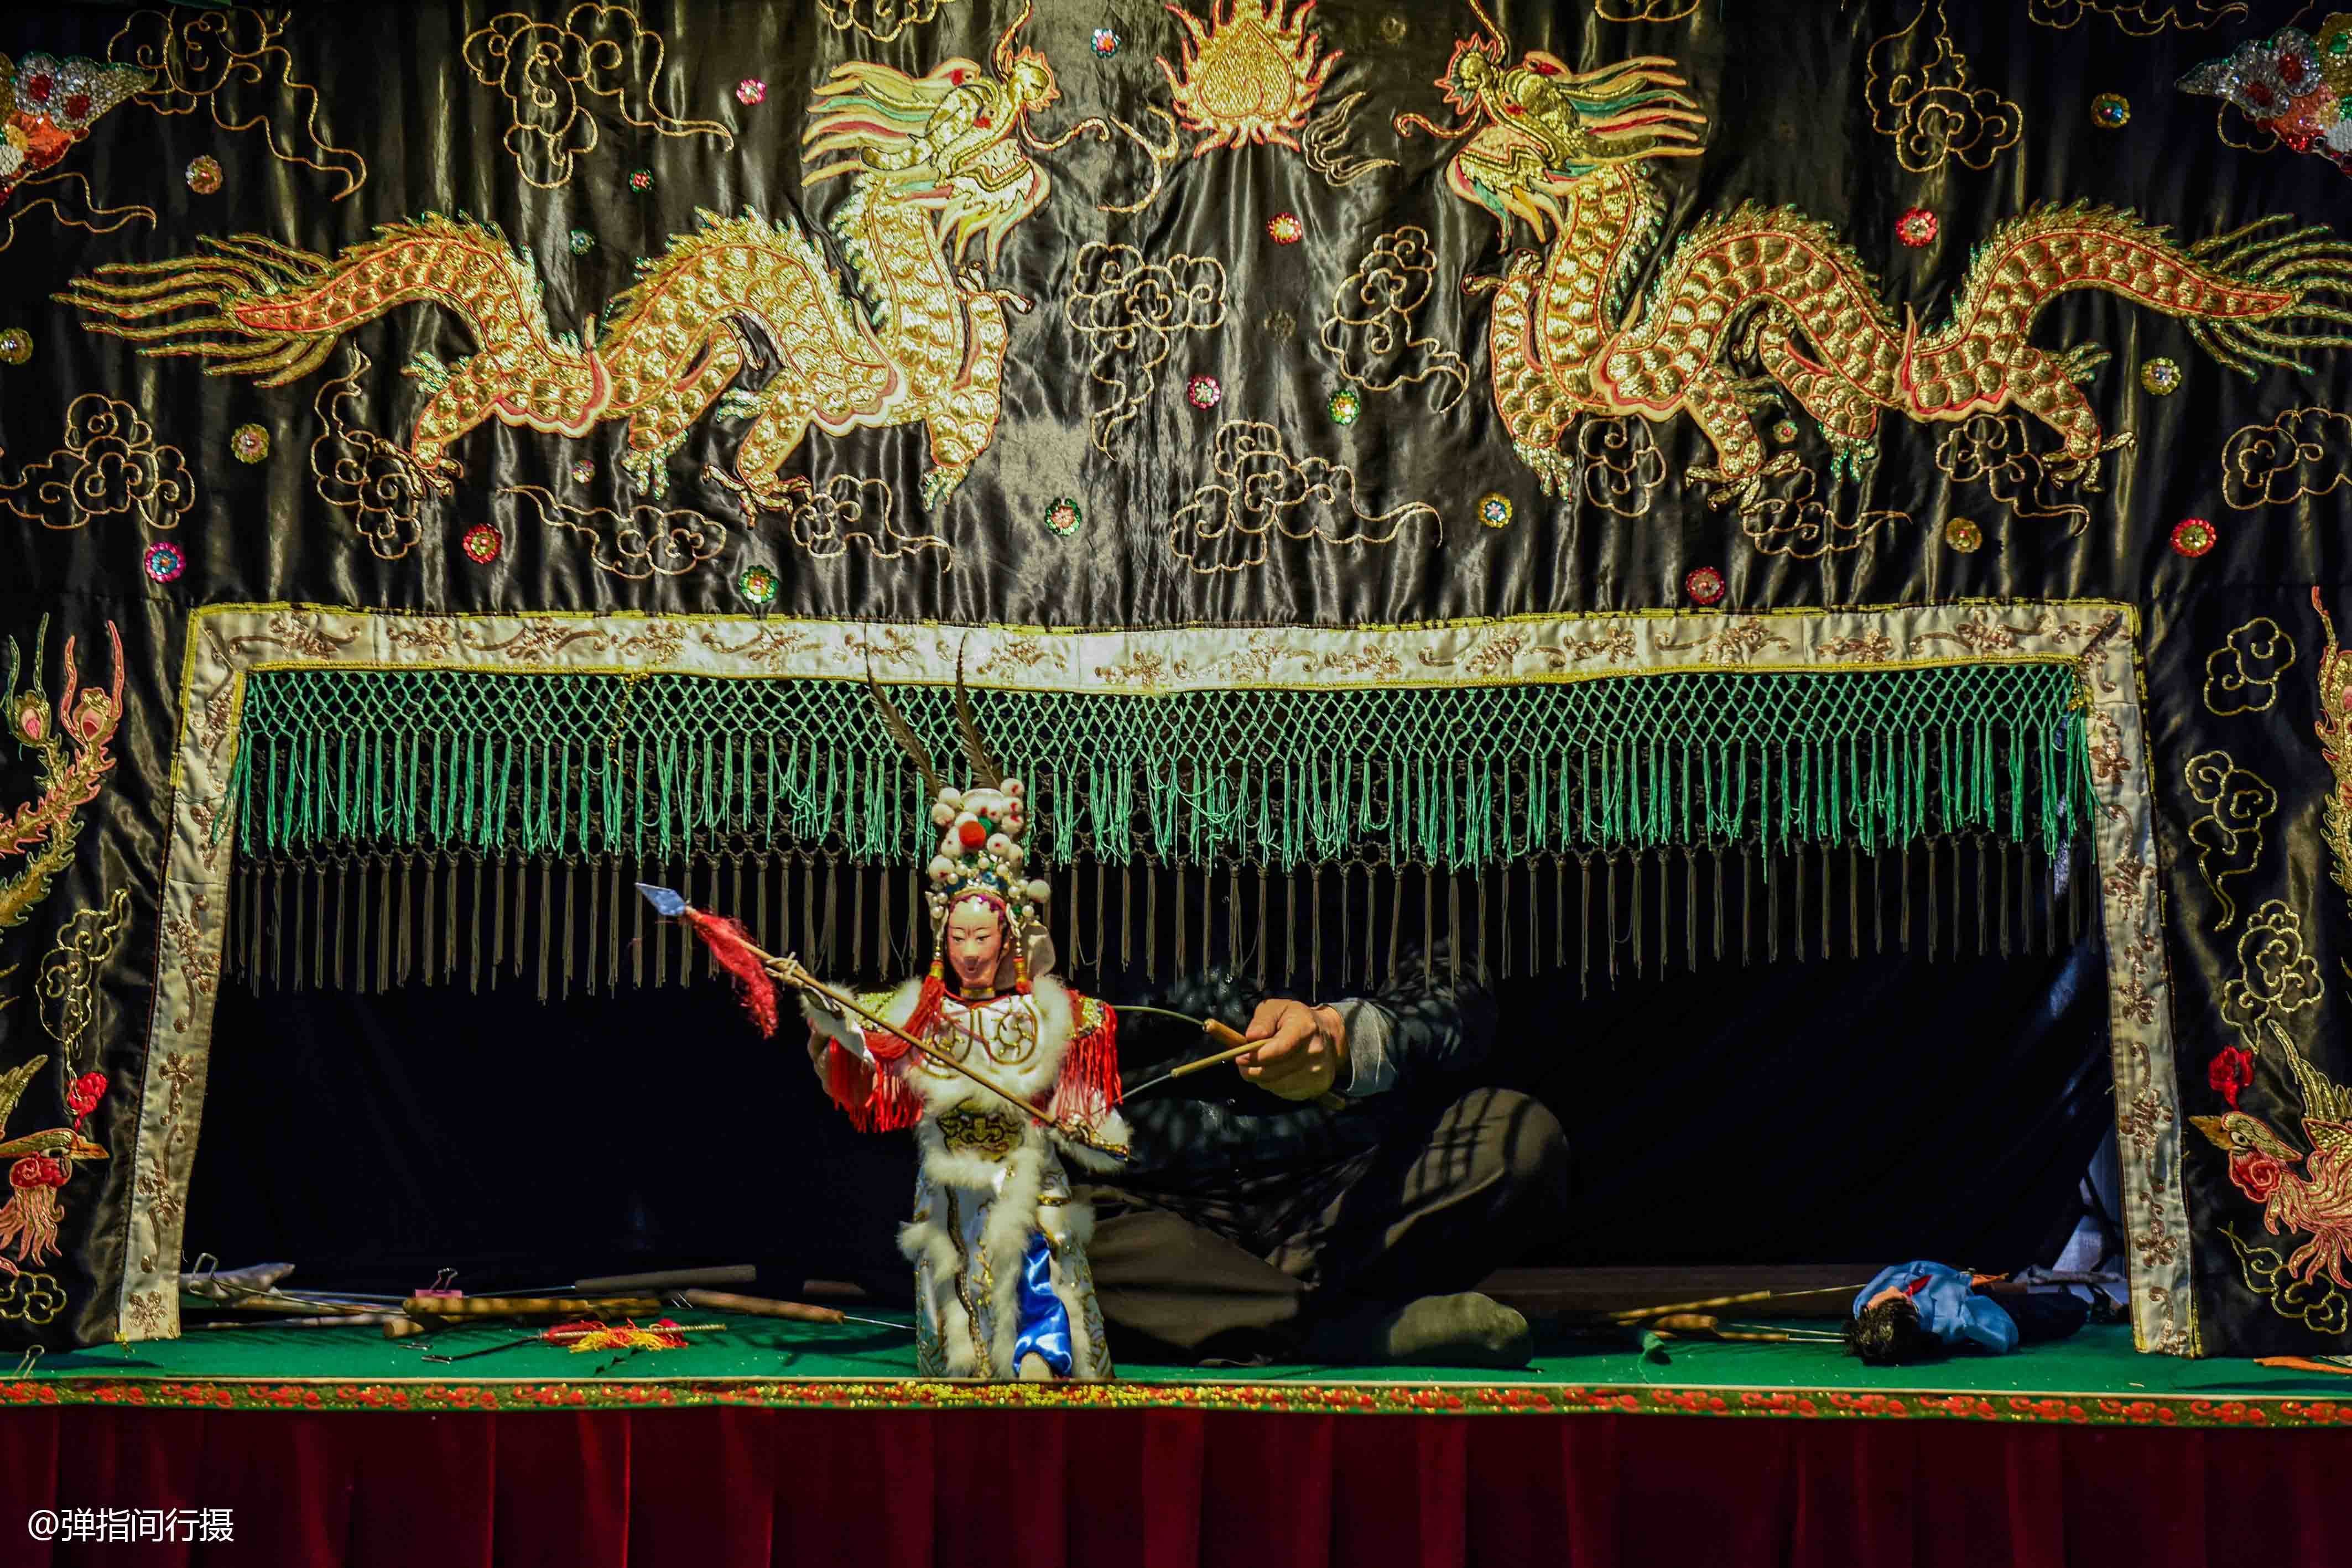 广东潮州木偶戏艺人,自办博物馆传承非遗文化,免费对游客开放